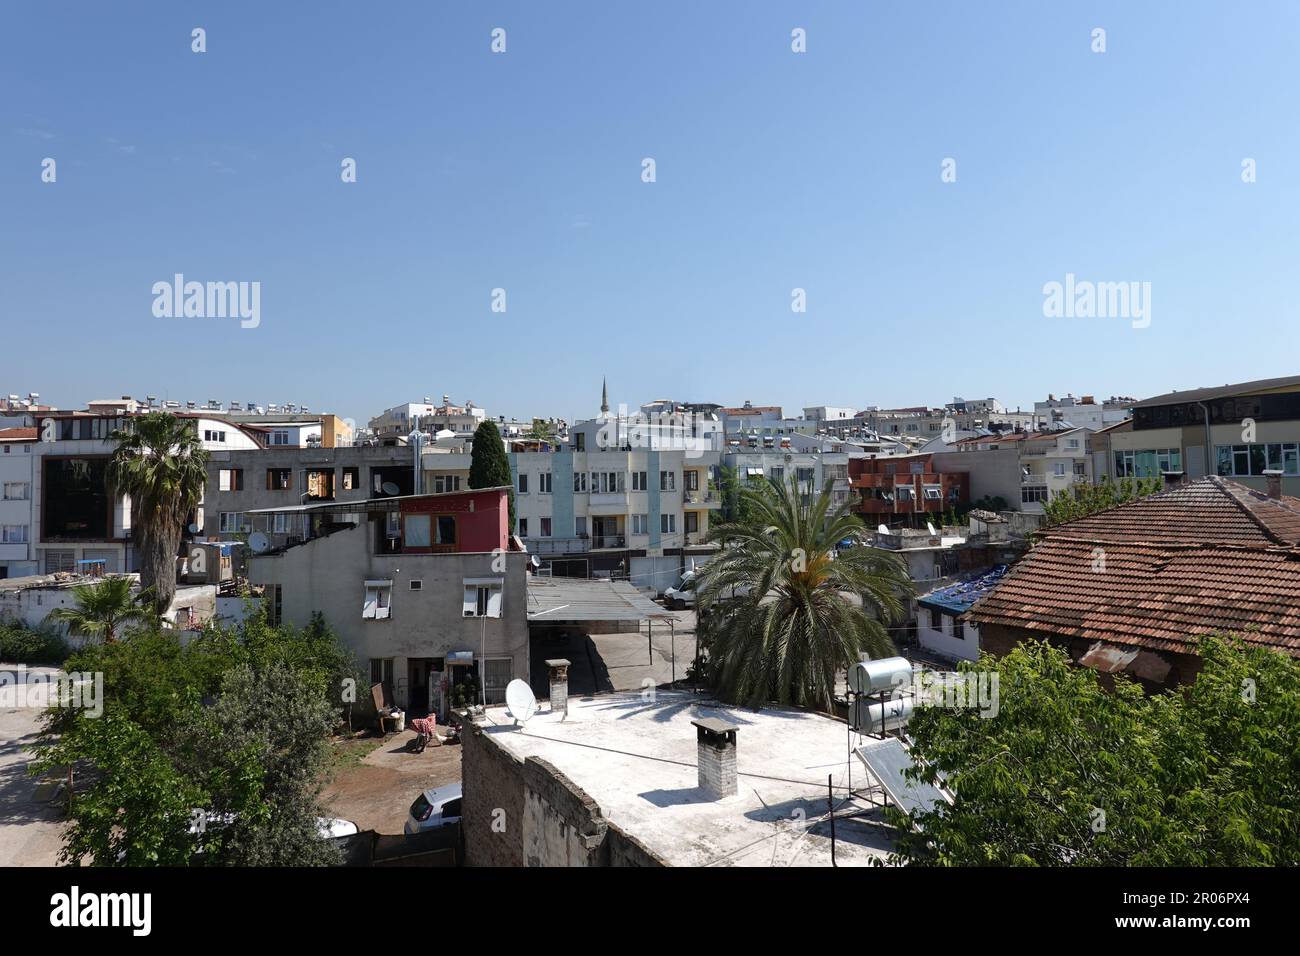 Tipico paesaggio urbano turco con case dense in piedi in cattive condizioni vista dalla finestra in giorno luminoso senza nuvole Foto Stock